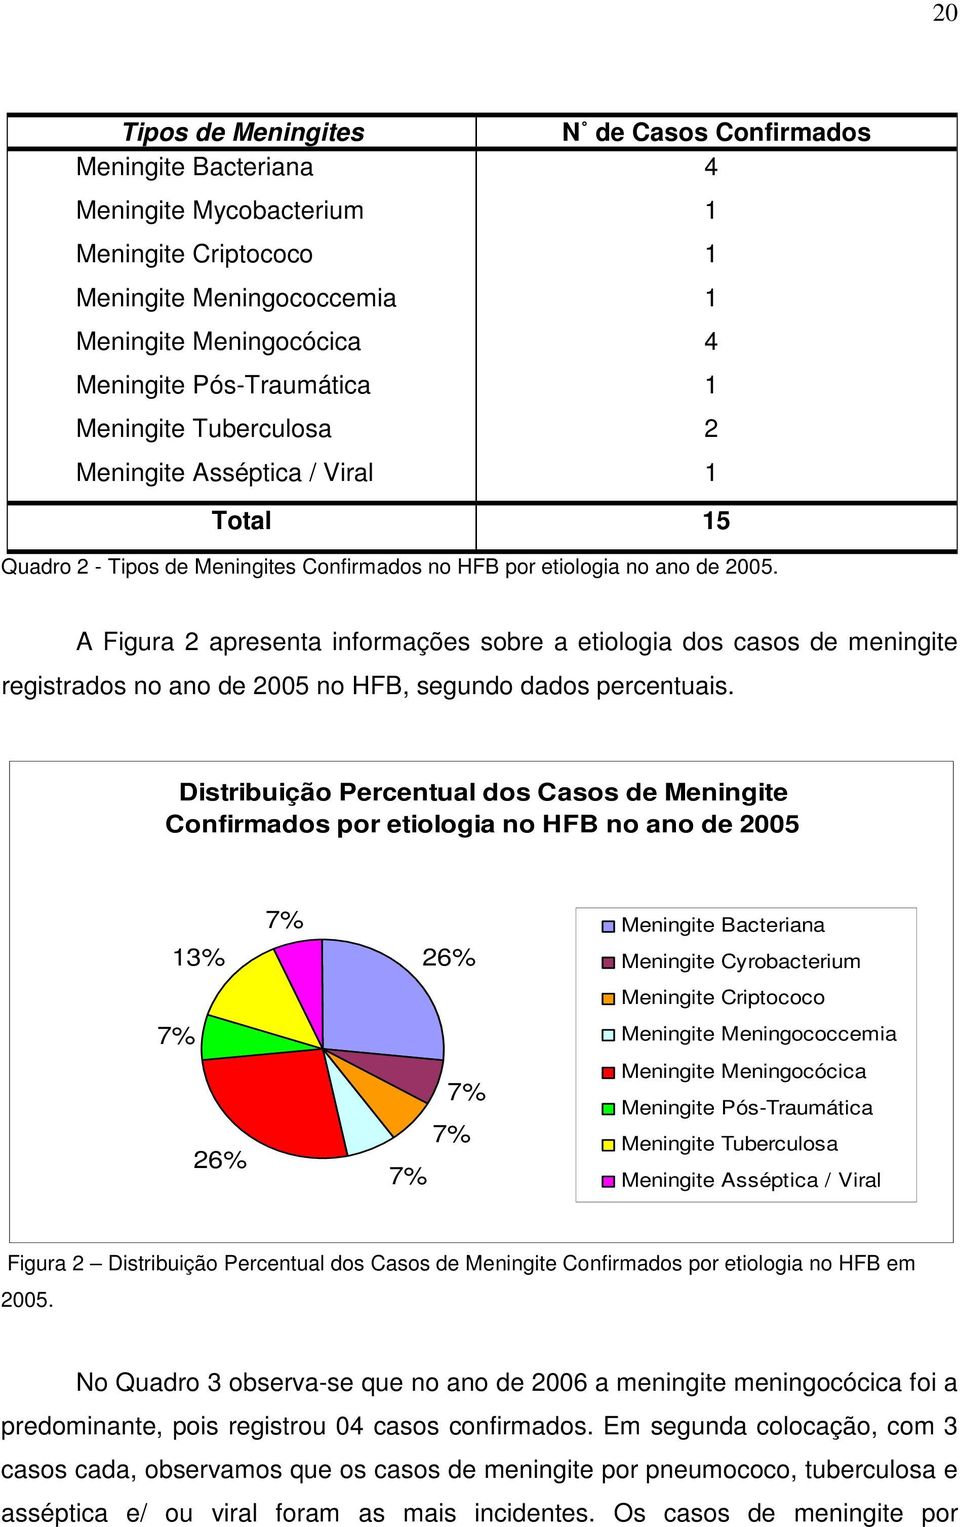 A Figura 2 apresenta informações sobre a etiologia dos casos de meningite registrados no ano de 2005 no HFB, segundo dados percentuais.